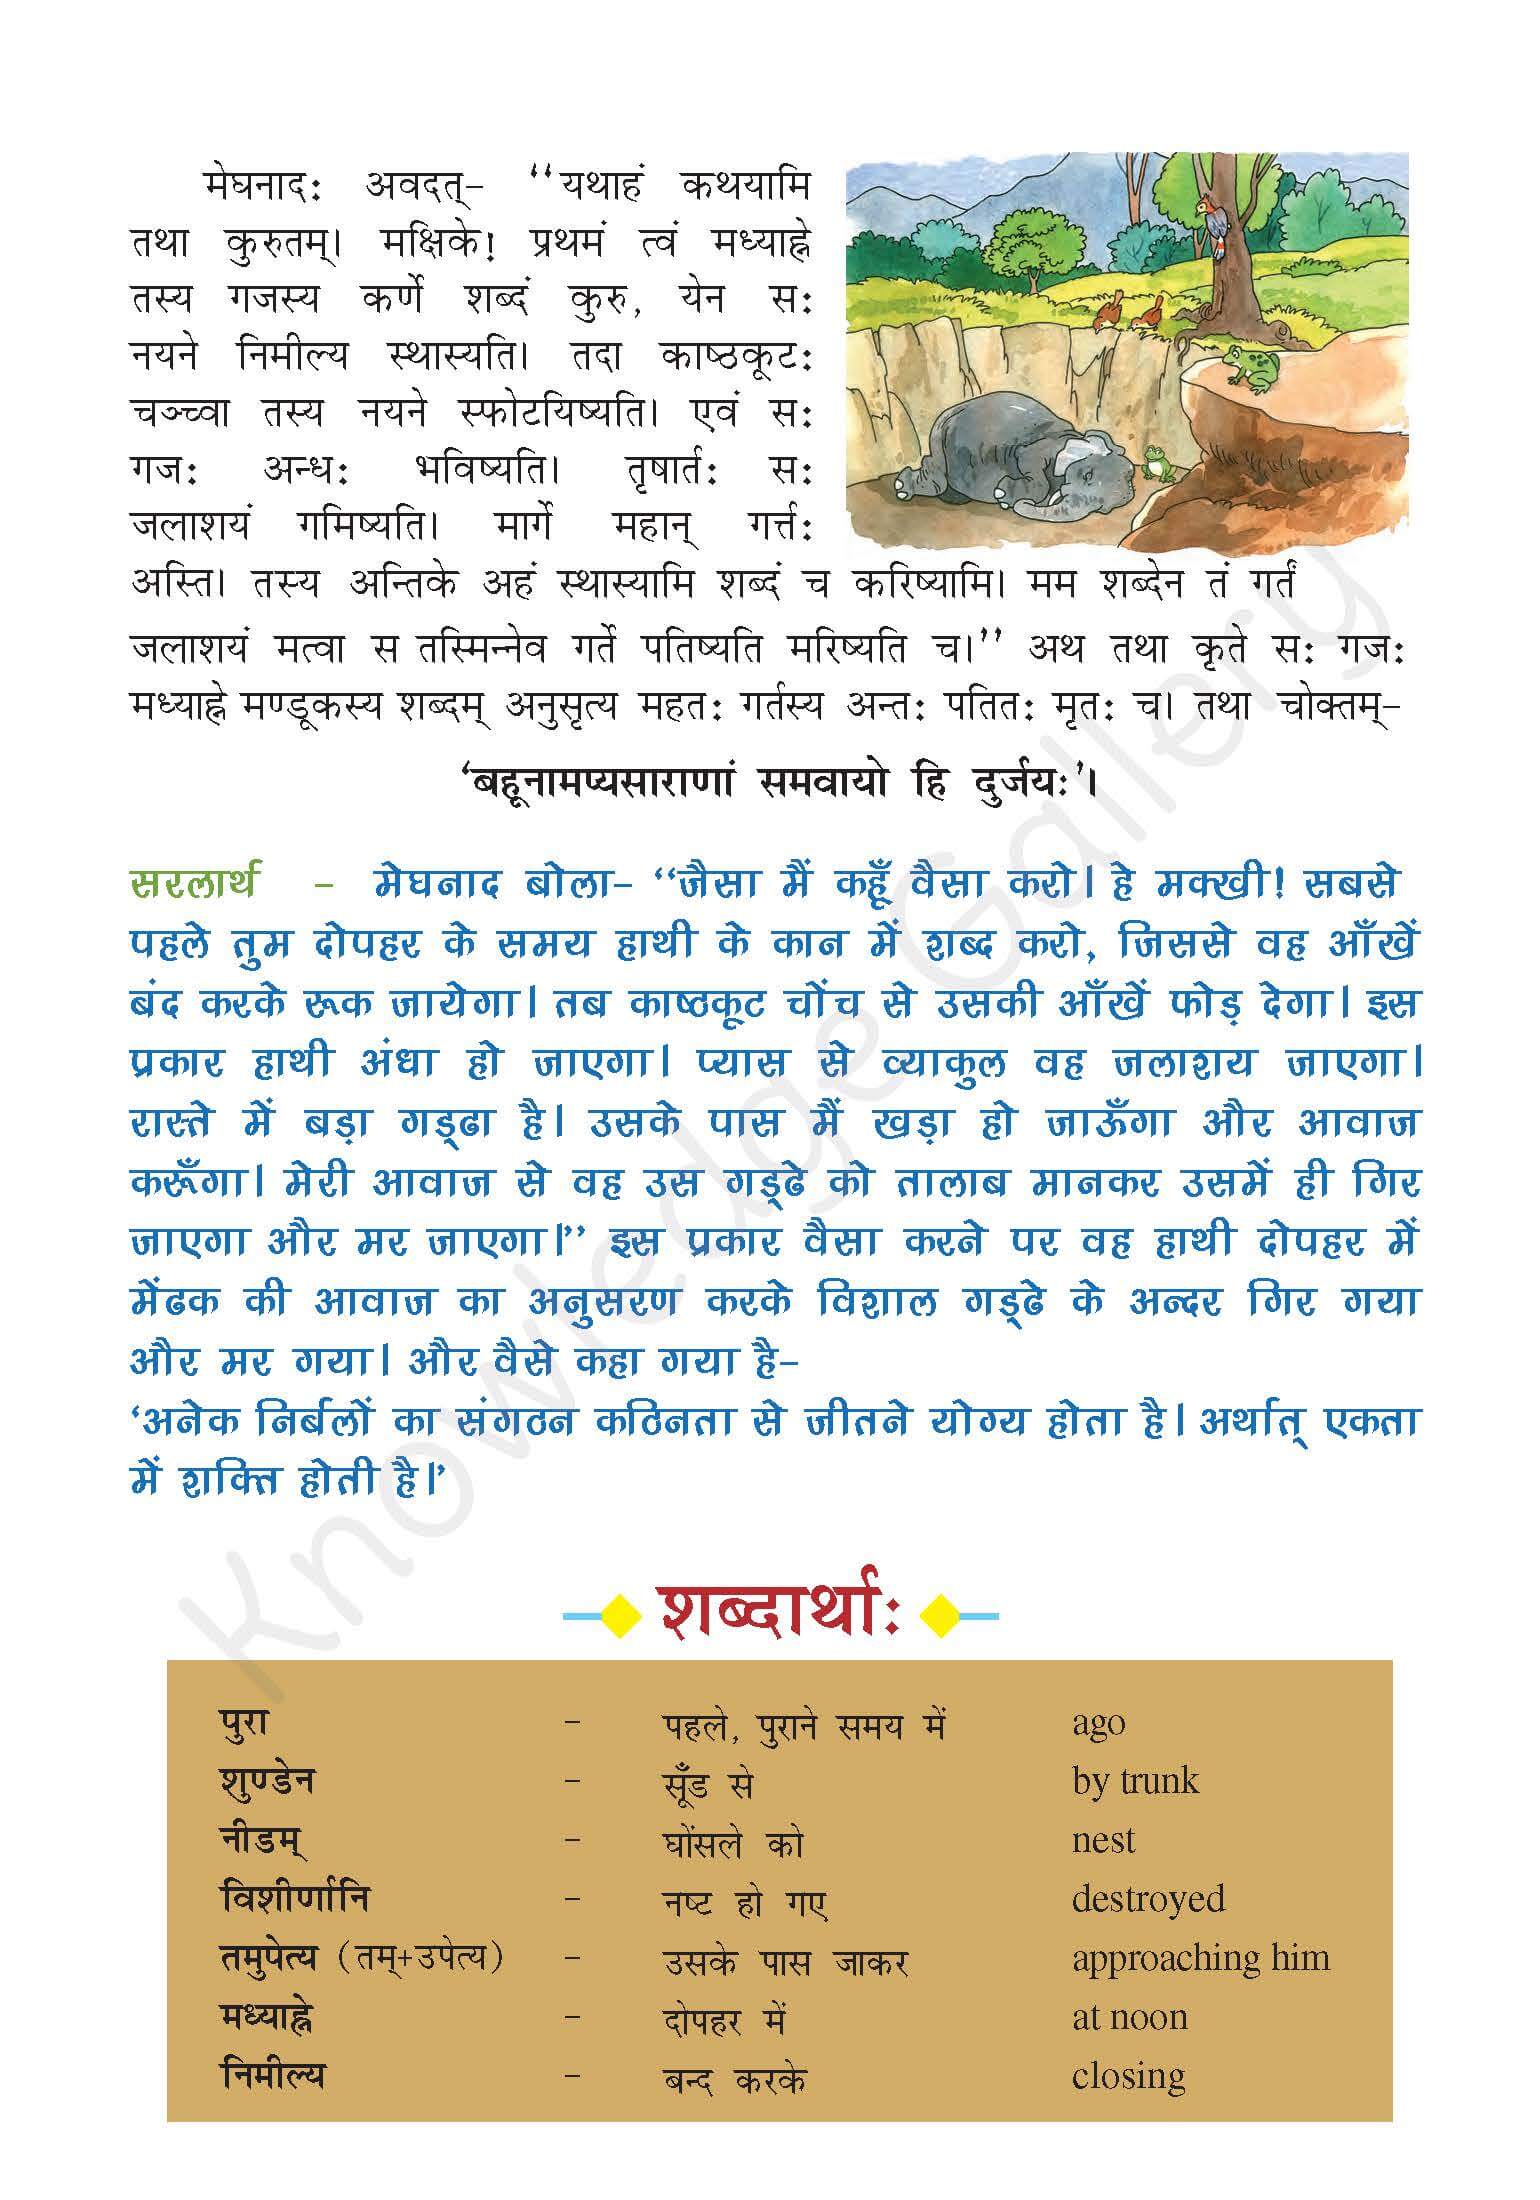 NCERT Solution For Class 7 Sanskrit Chapter 10 part 2